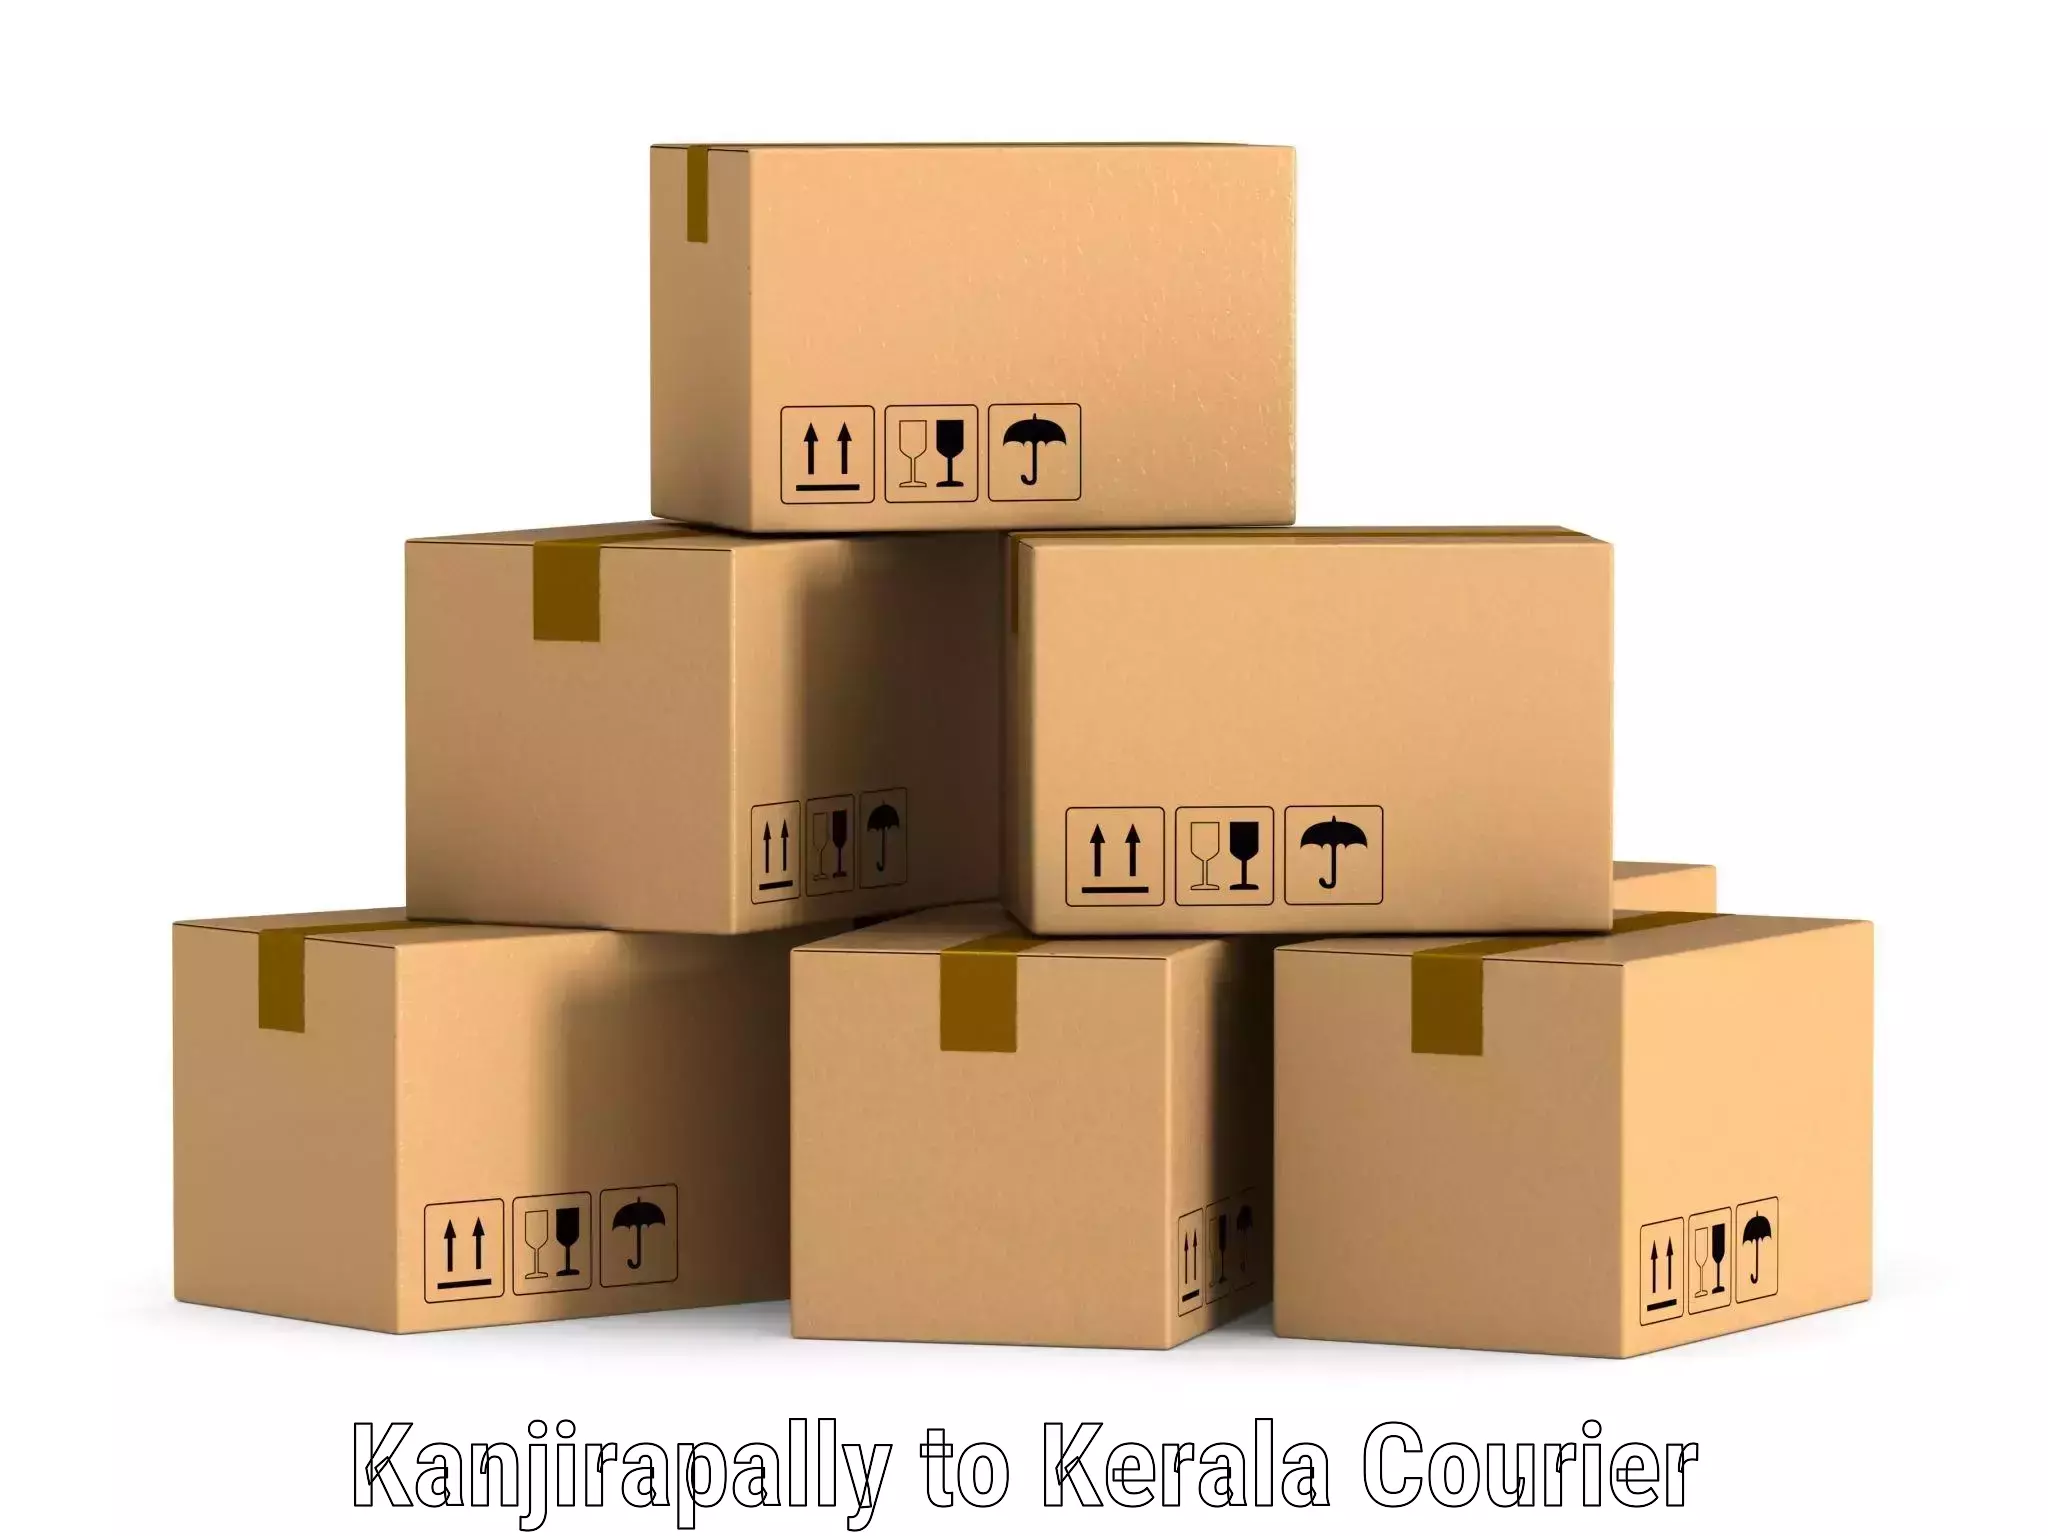 Express delivery capabilities Kanjirapally to Kerala